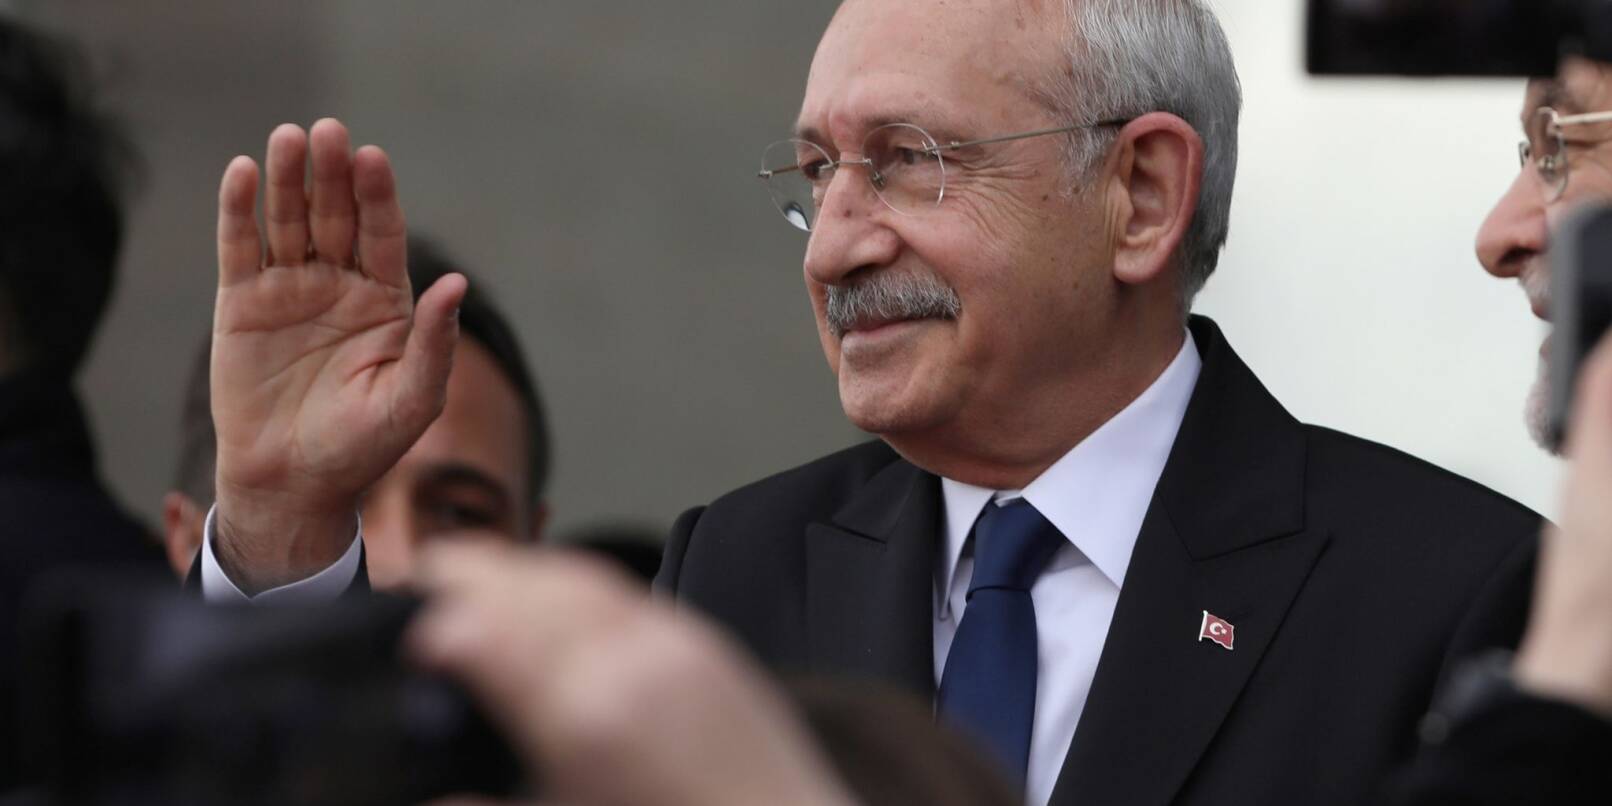 Kemal Kilicdaroglu, Oppositionsführer in der Türkei, tritt bei den im Mai geplanten Präsidentenwahlen gegen Amtsinhaber Erdogan an.